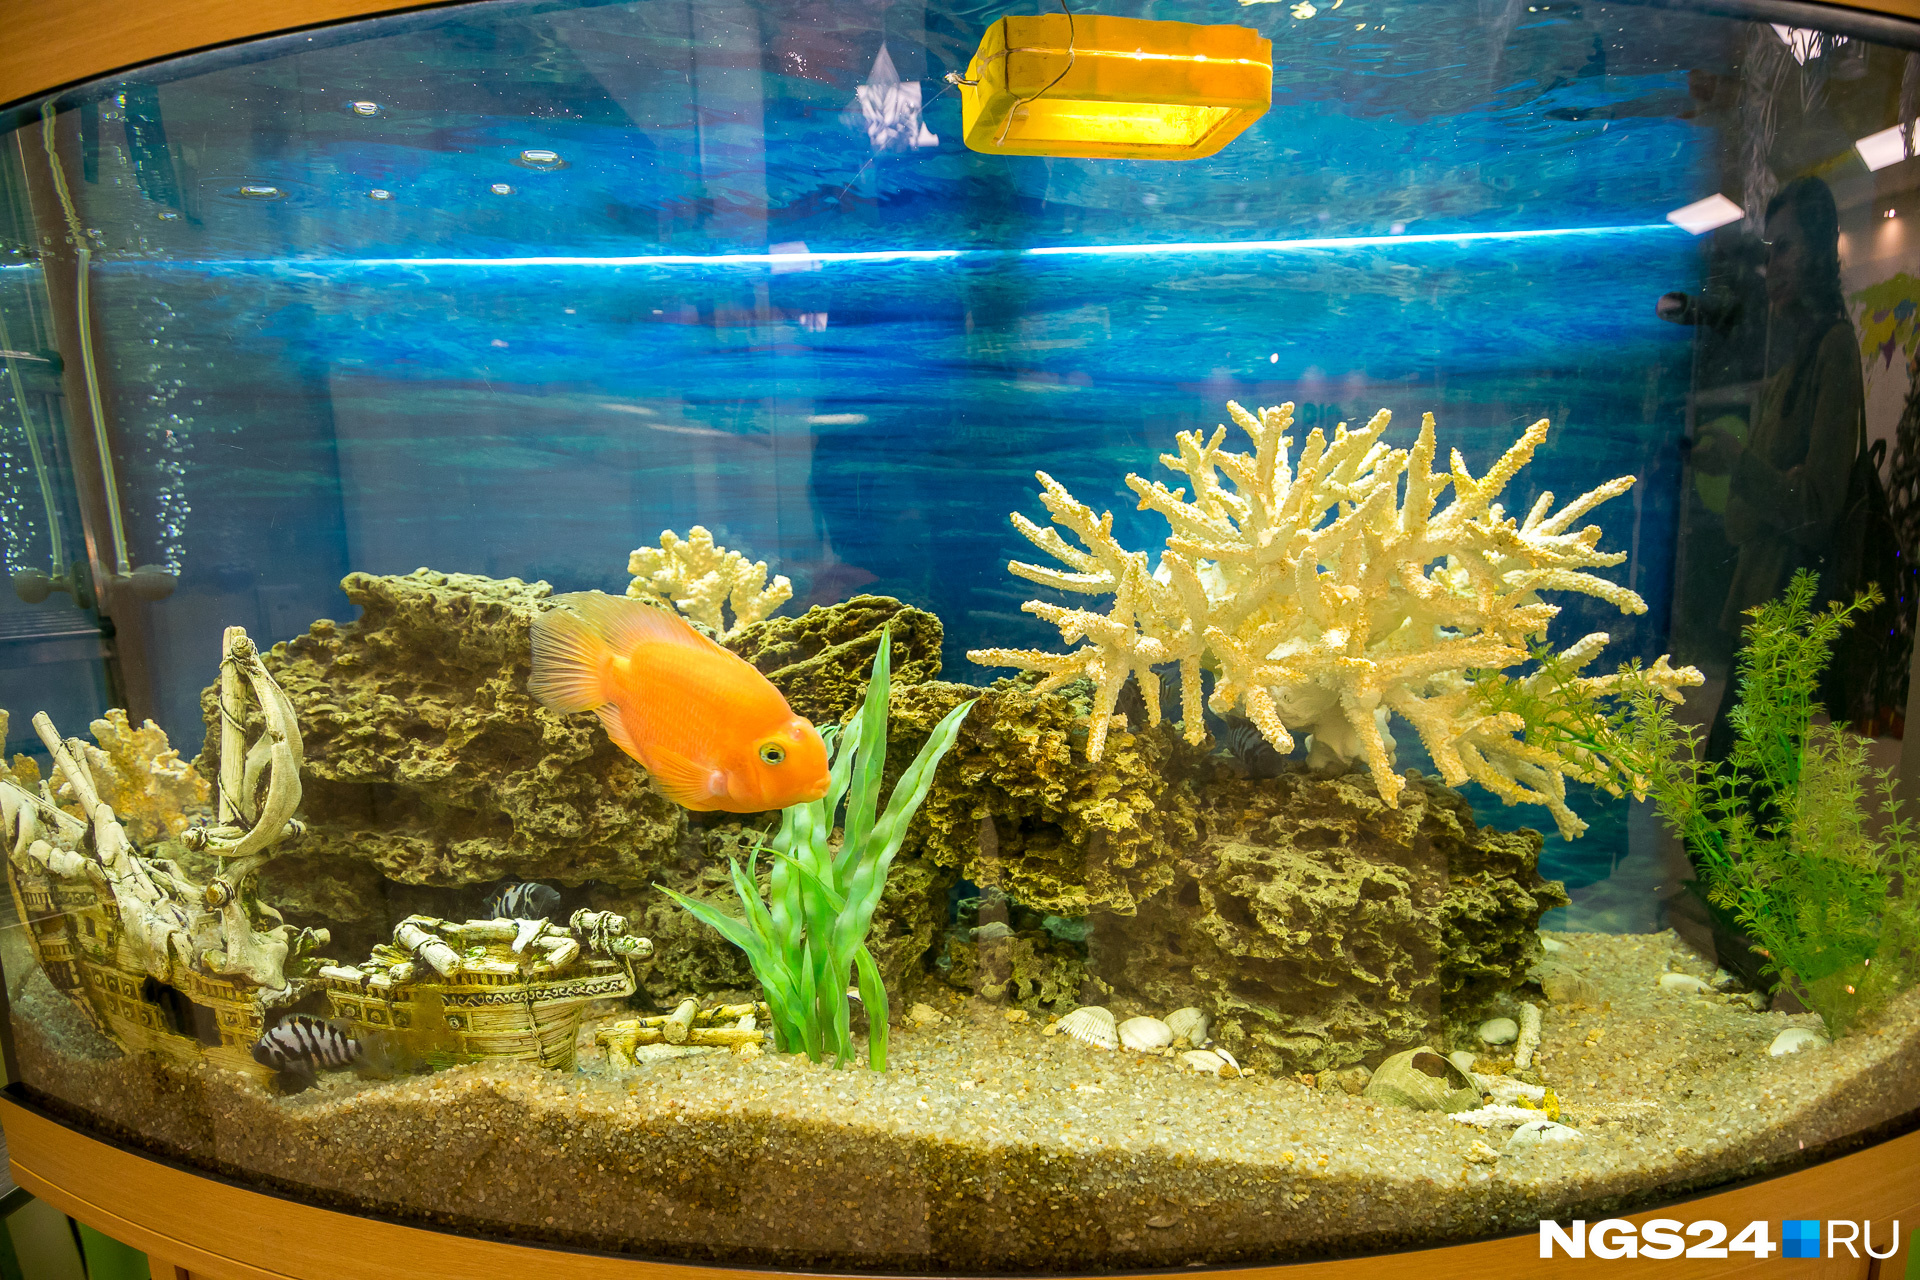 В холле стоит аквариум с прелестной золотой рыбкой